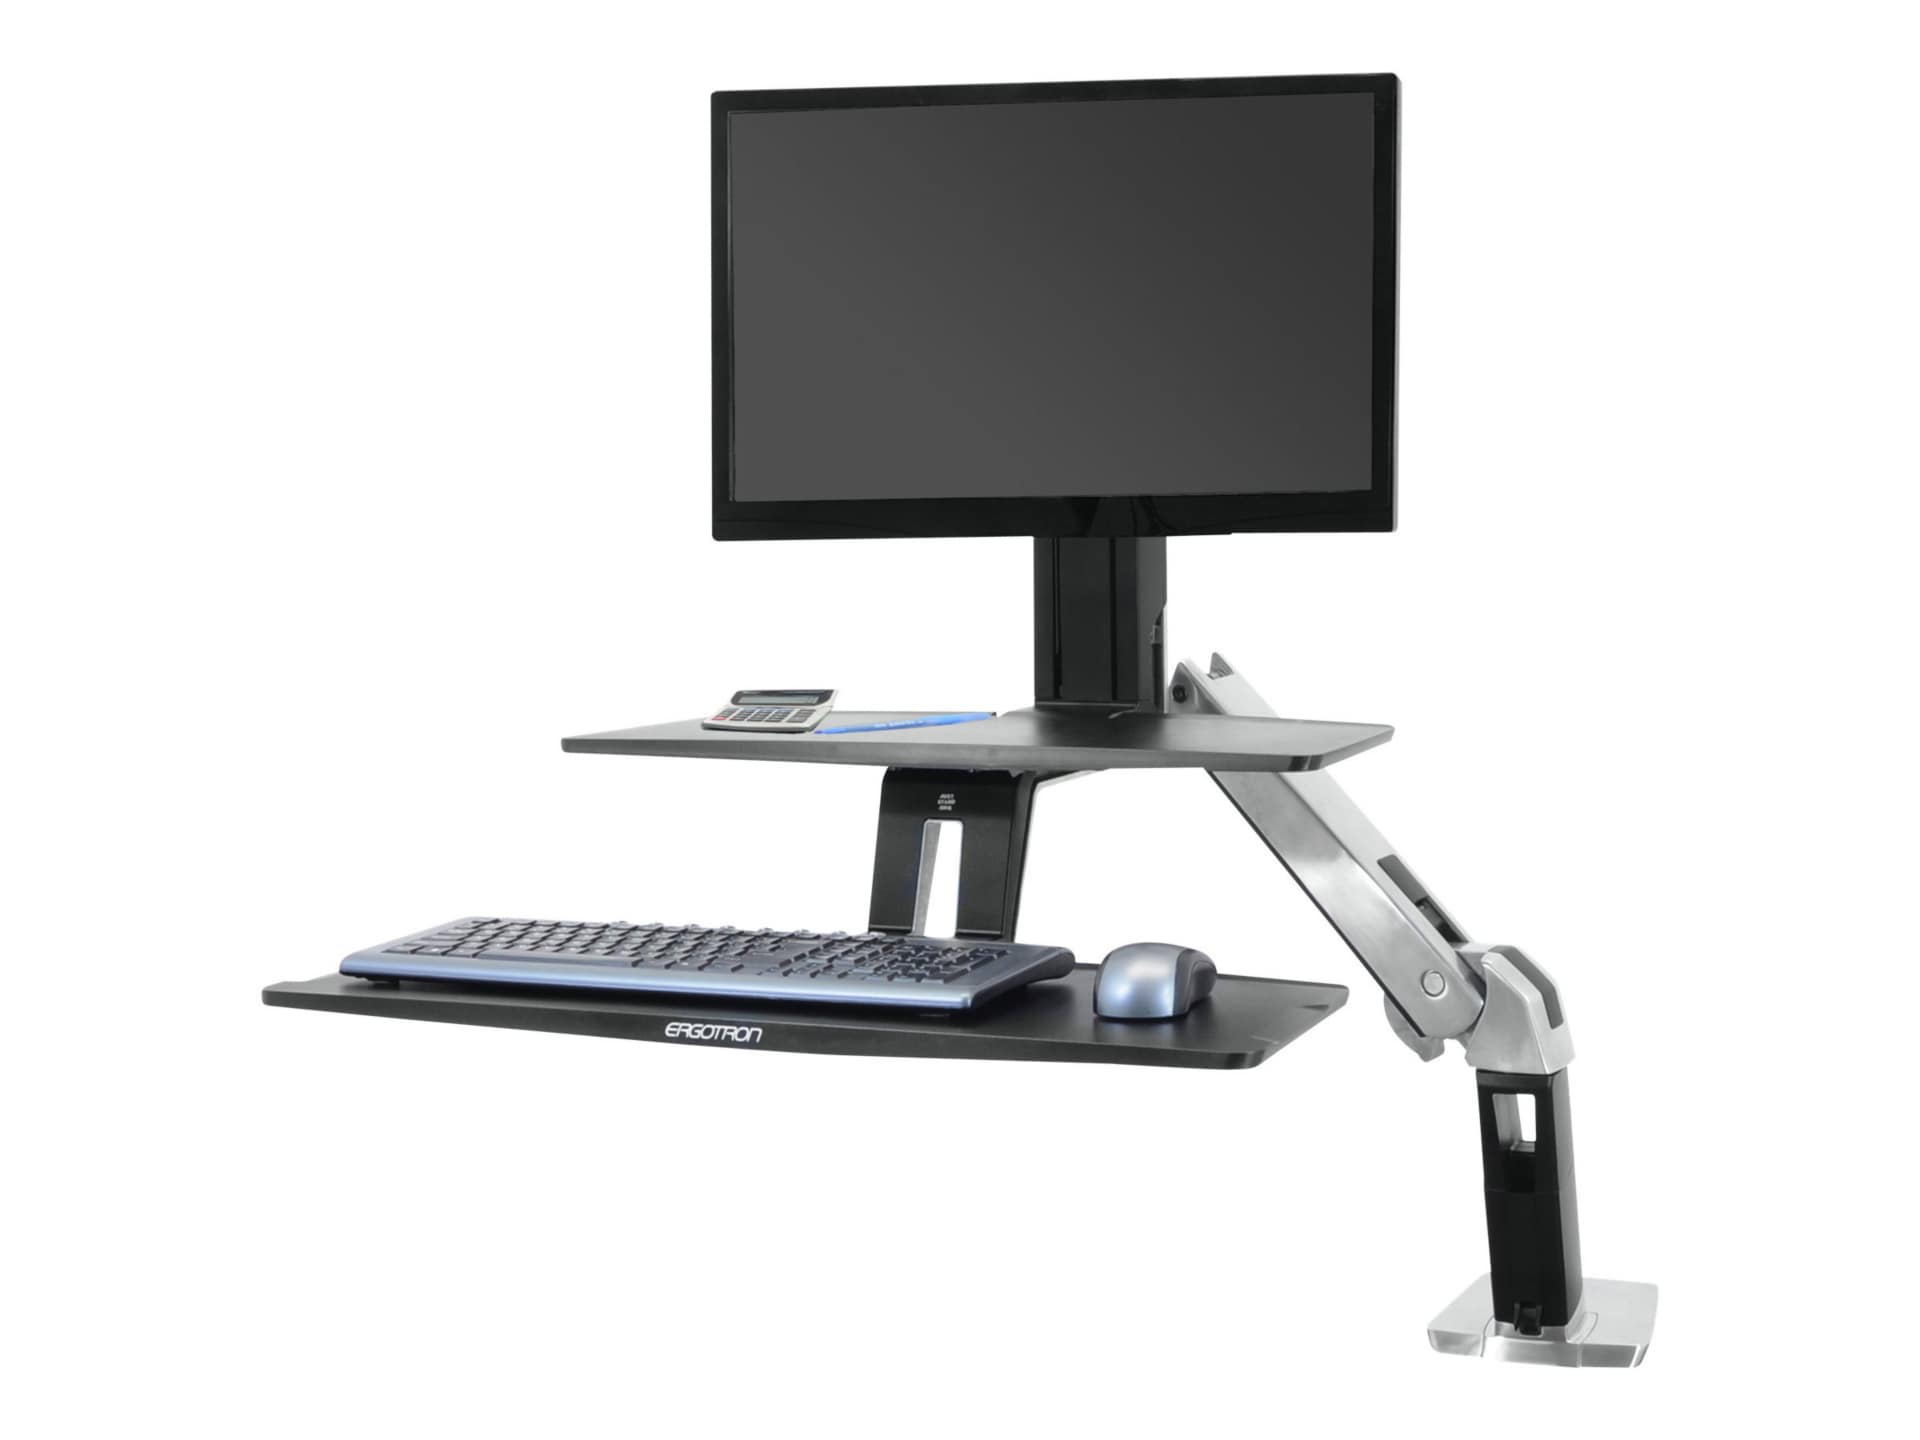 Ergotron WorkFit-A Single HD Workstation With Suspended Keyboard - standing desk converter - black, polished aluminum